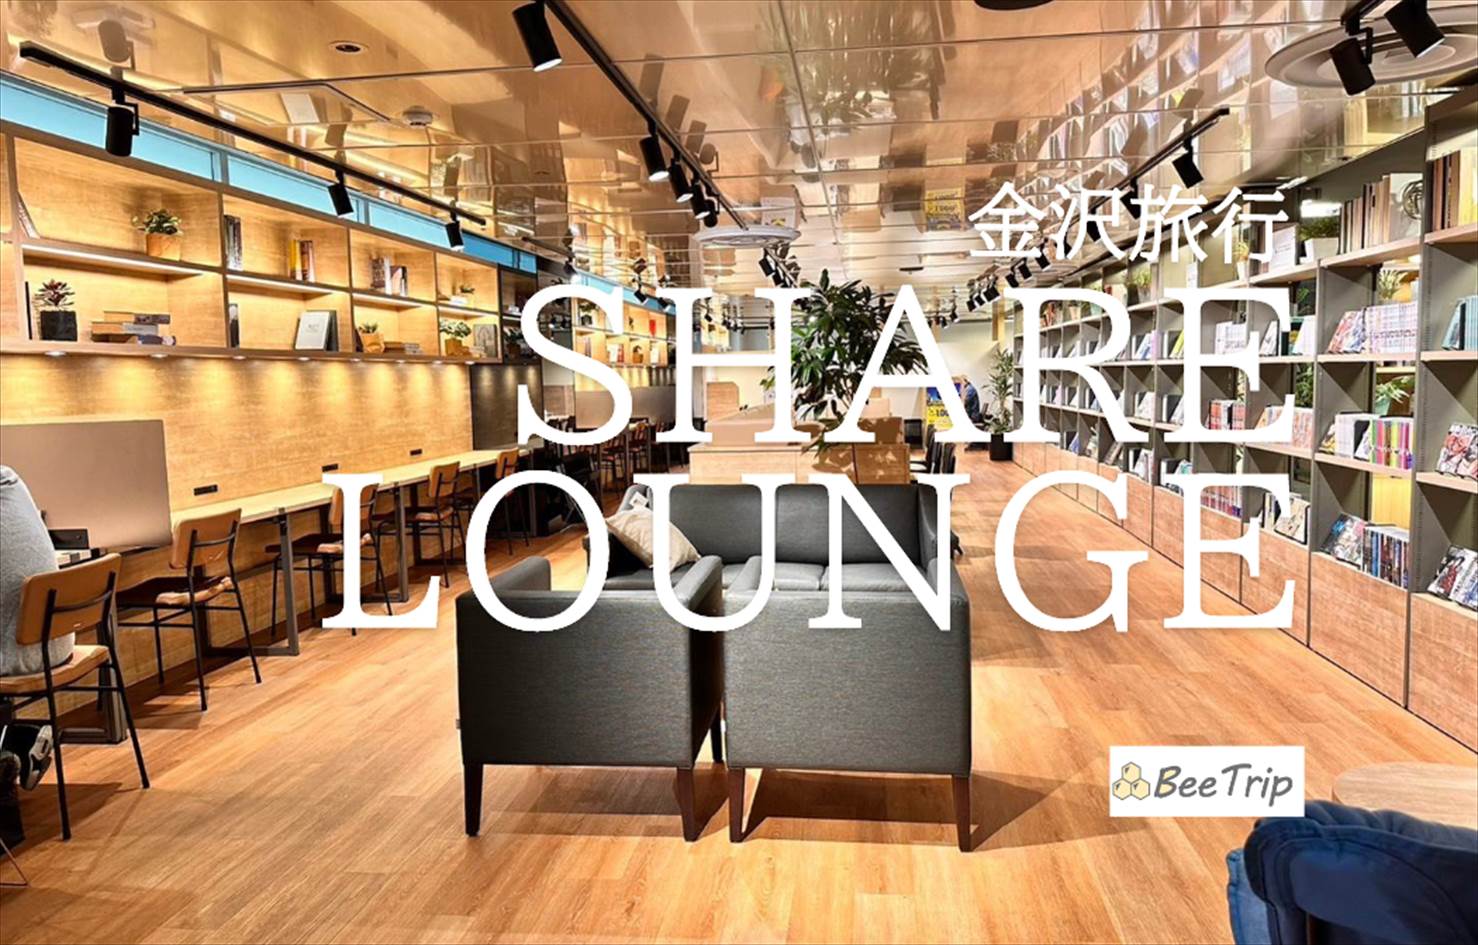 【金沢】シェアラウンジ SHARE LOUNGE金沢エムザ店のブログレポ！料金やドリンクなど実際の体験談を元にレビュー